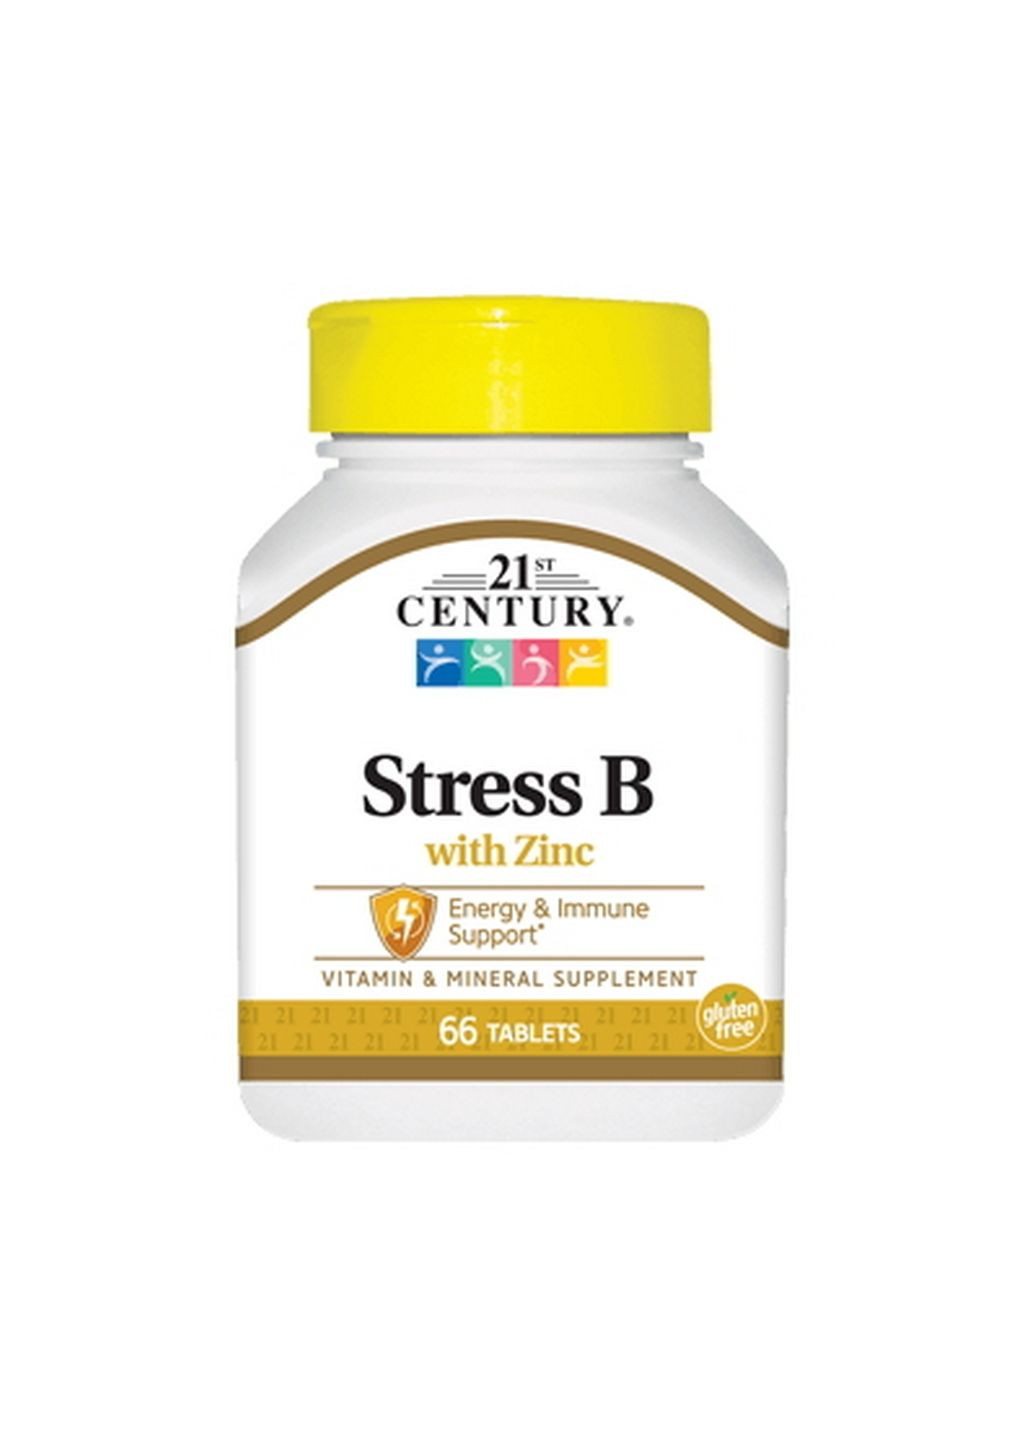 Витамины и минералы Stress B with Zinc, 66 таблеток 21st Century (293479400)